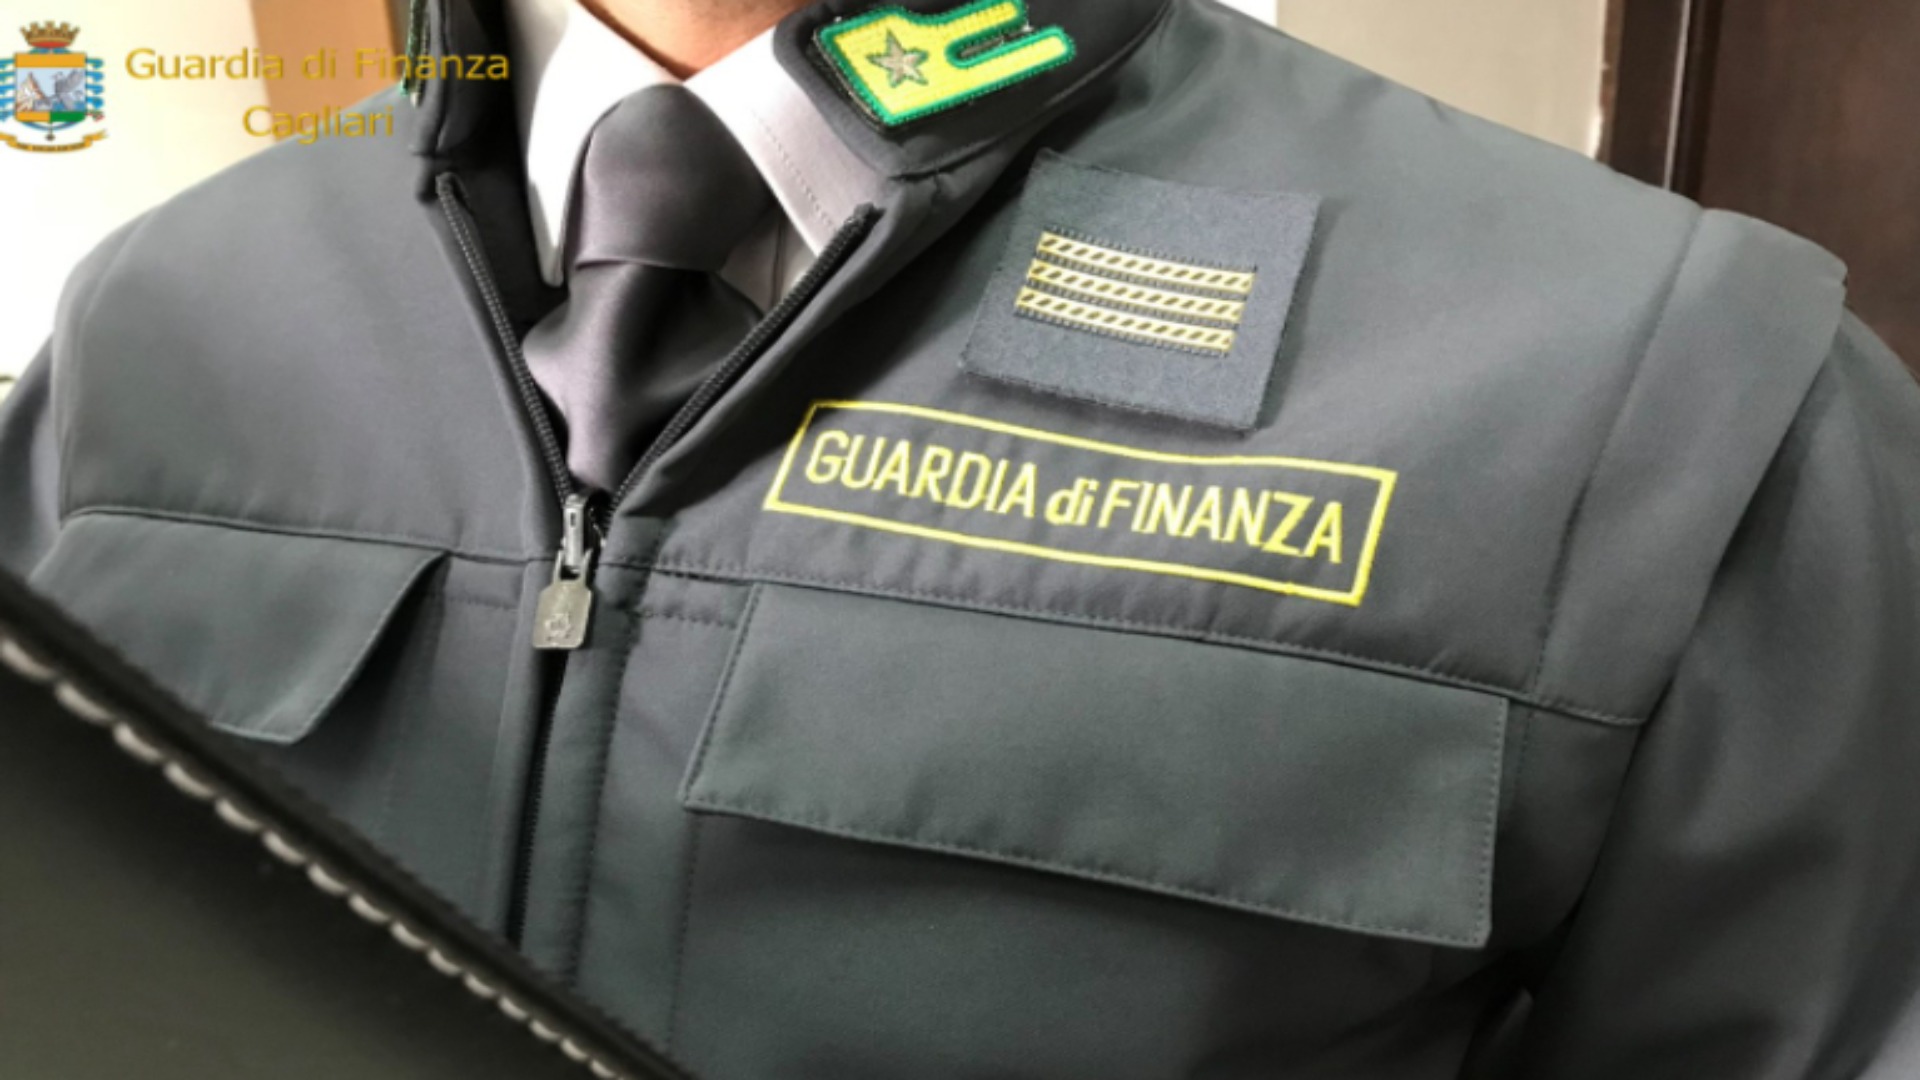 Guardia di Finanza: si apre il concorso nazionale con oltre 1000 mille assunzioni